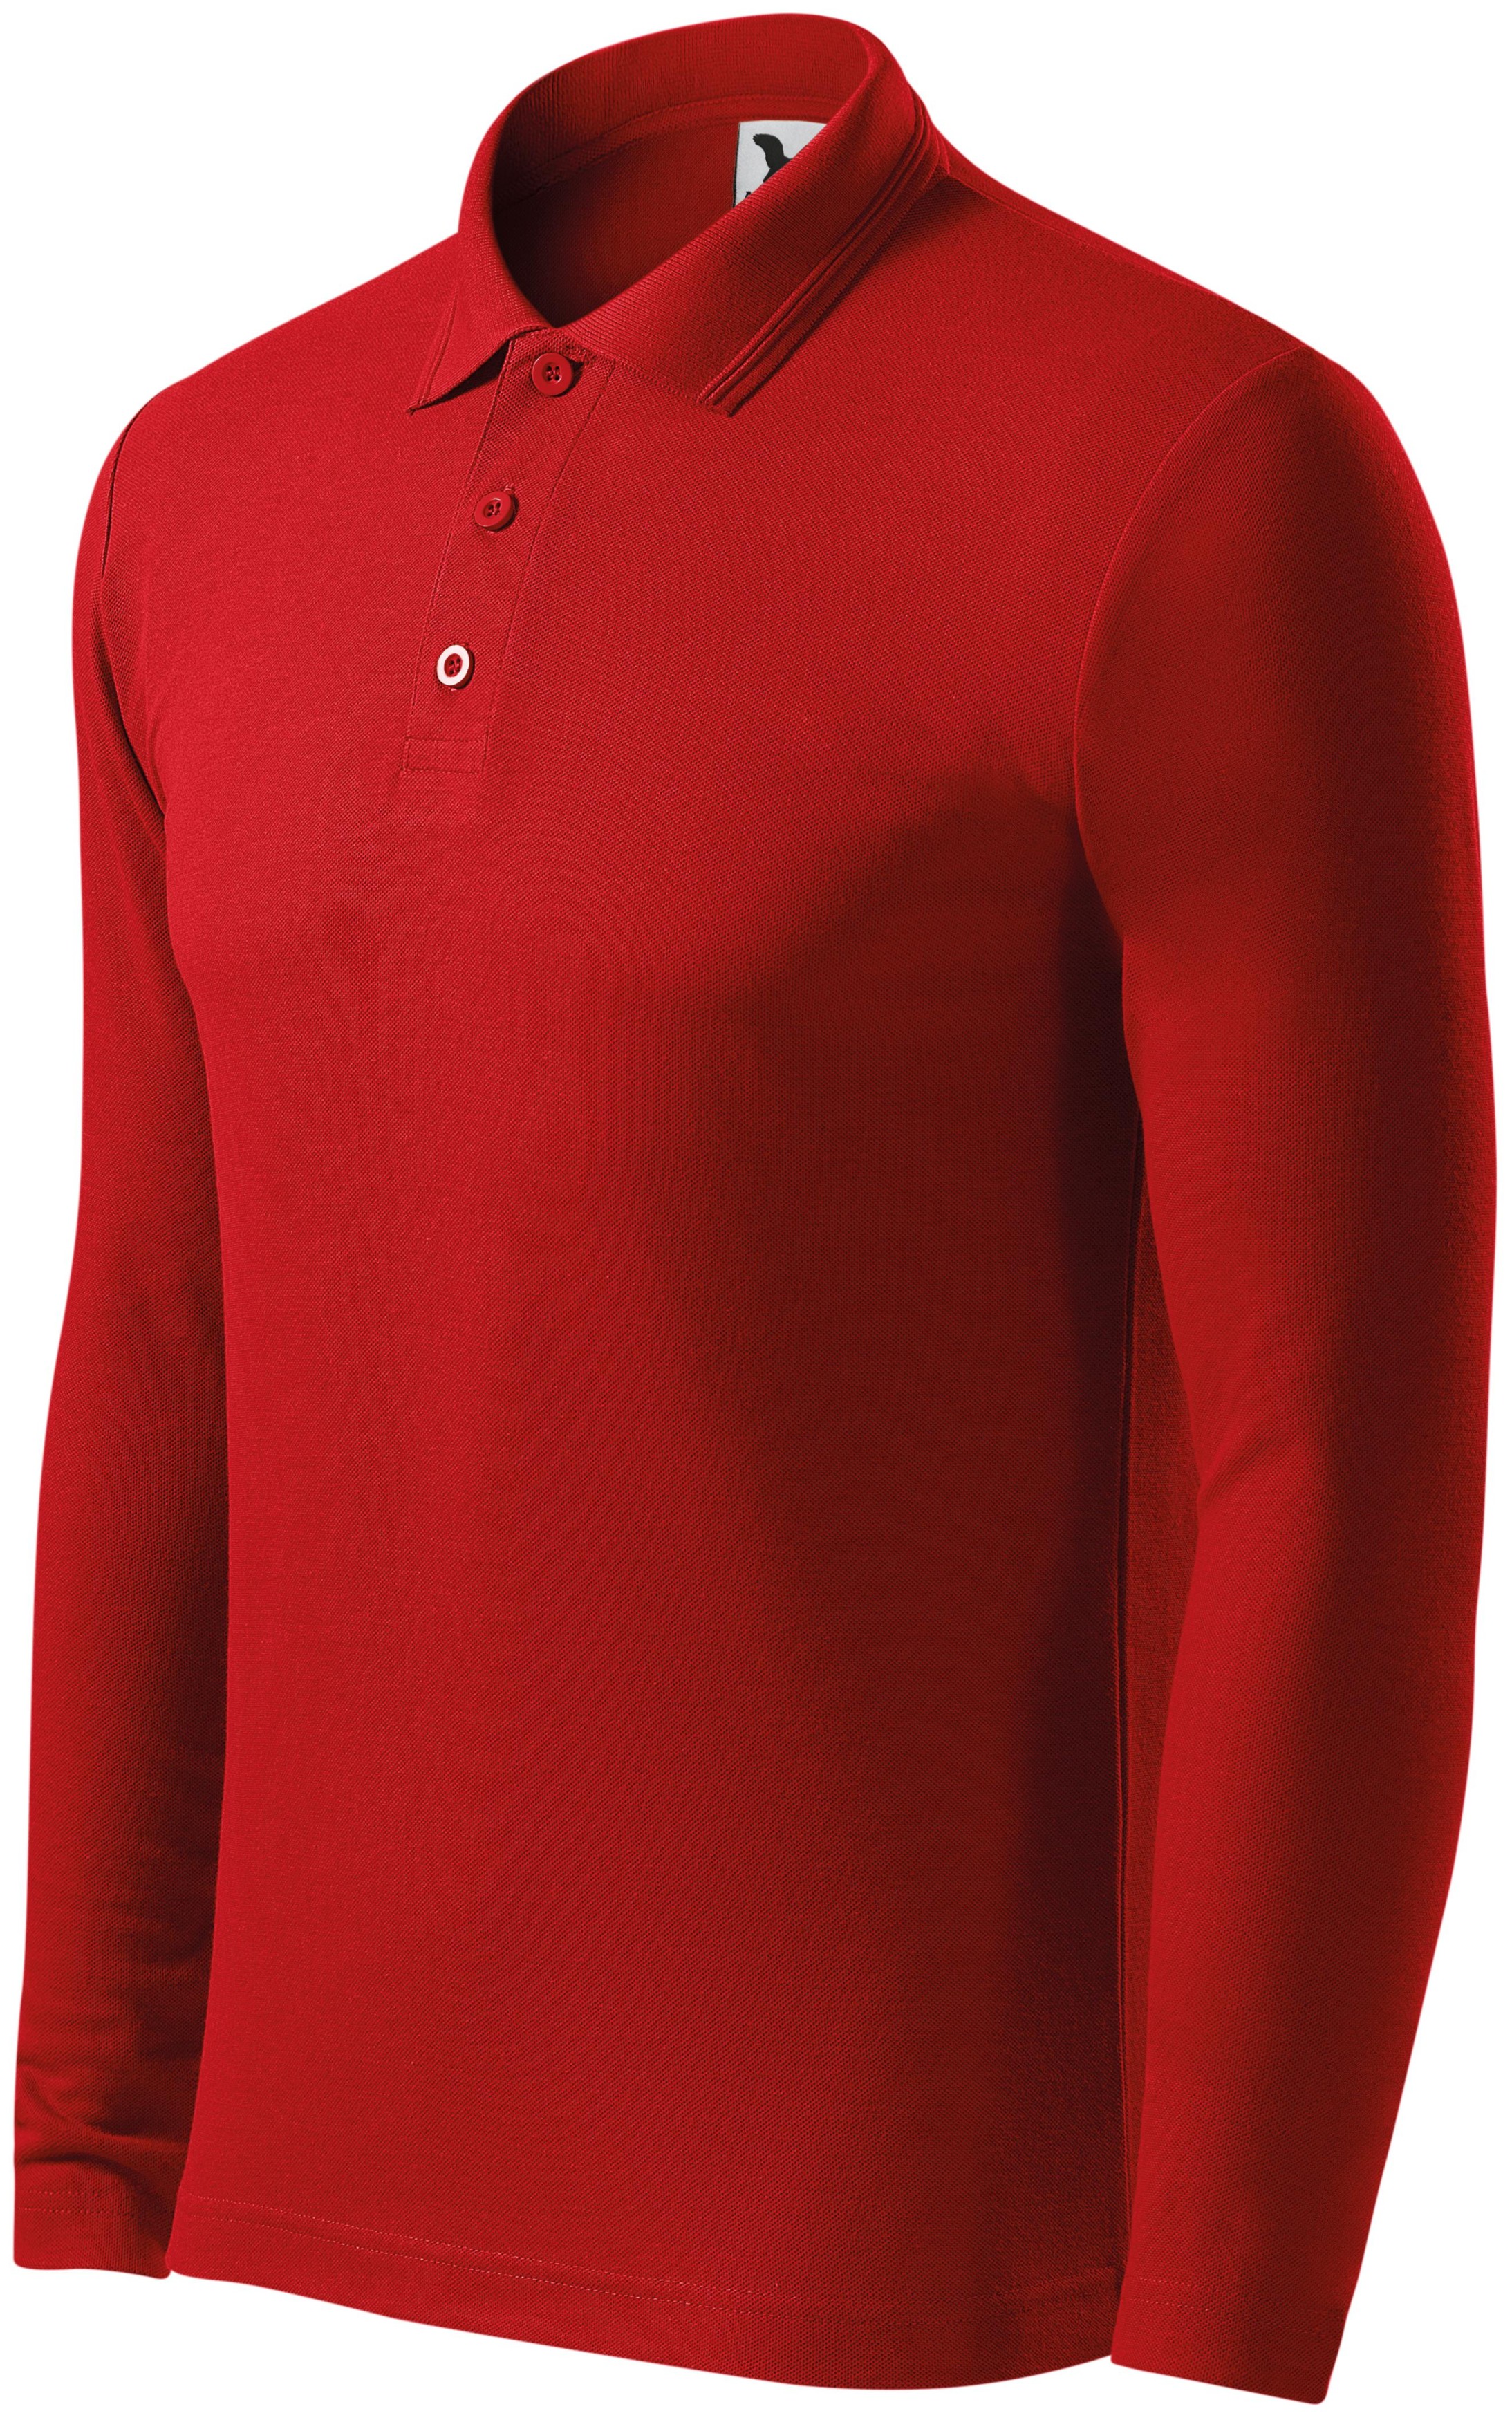 Ανδρικό πουκάμισο πόλο με μακριά μανίκια, το κόκκινο, 2XL